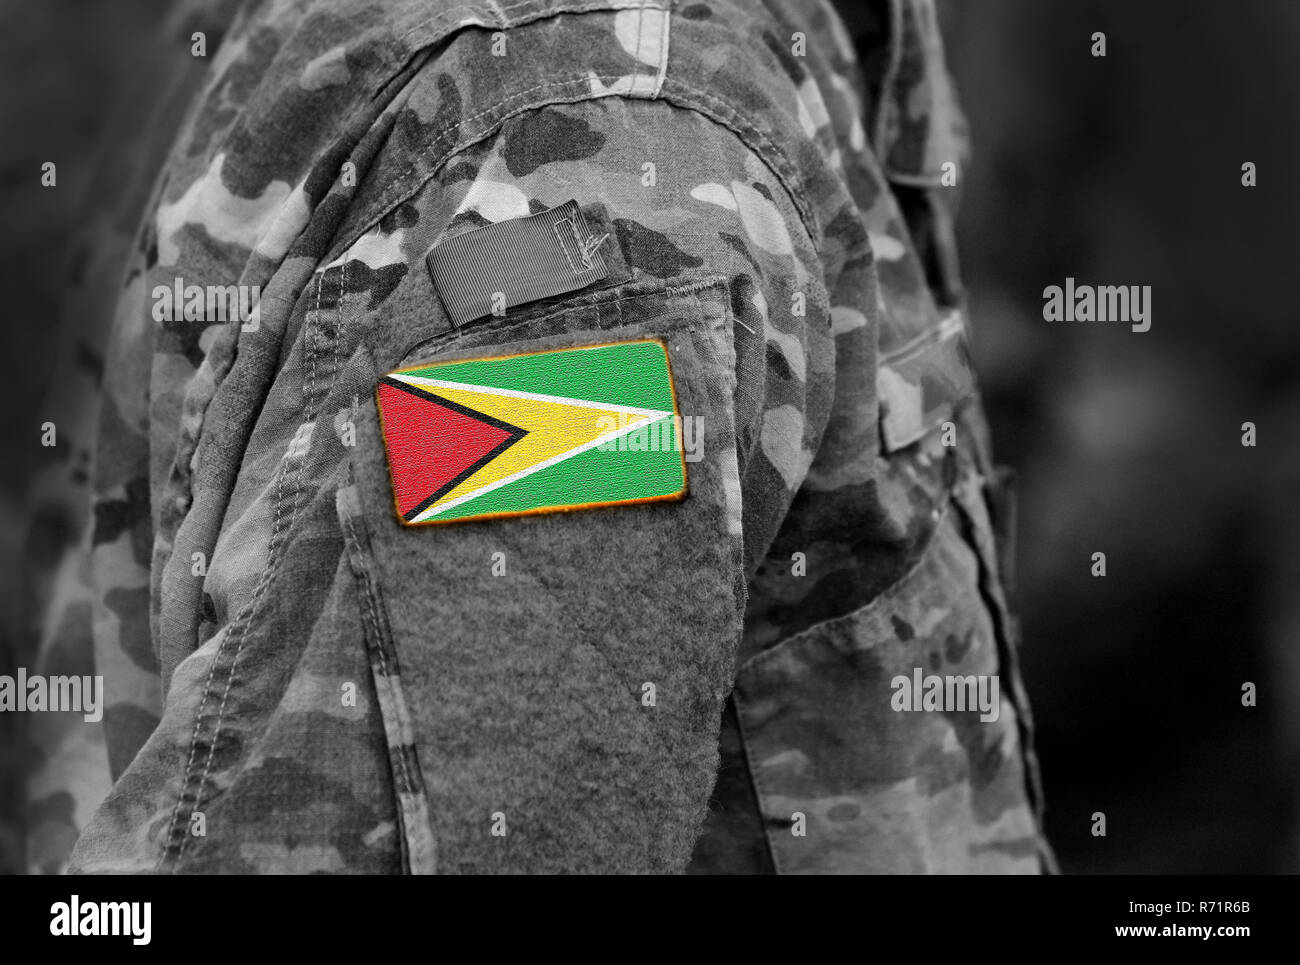 Flagge Guyana auf Soldat arm. Flagge der Kooperativen Republik Guyana auf militärische Uniformen (Collage). Stockfoto